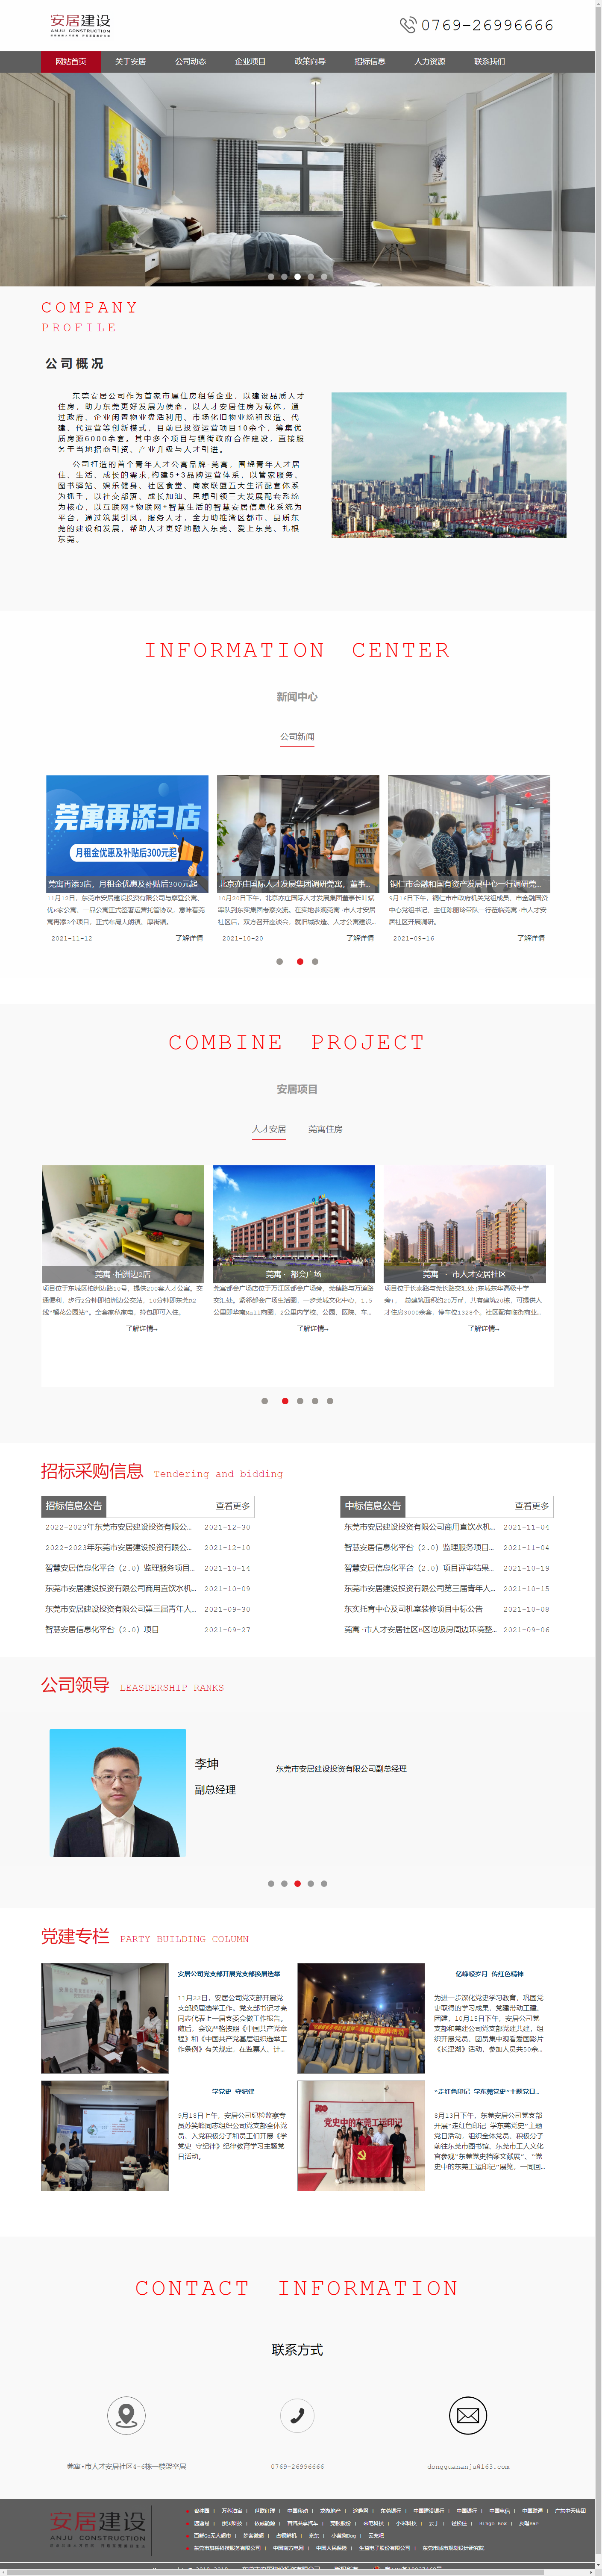 东莞市安居建设投资有限公司网站案例